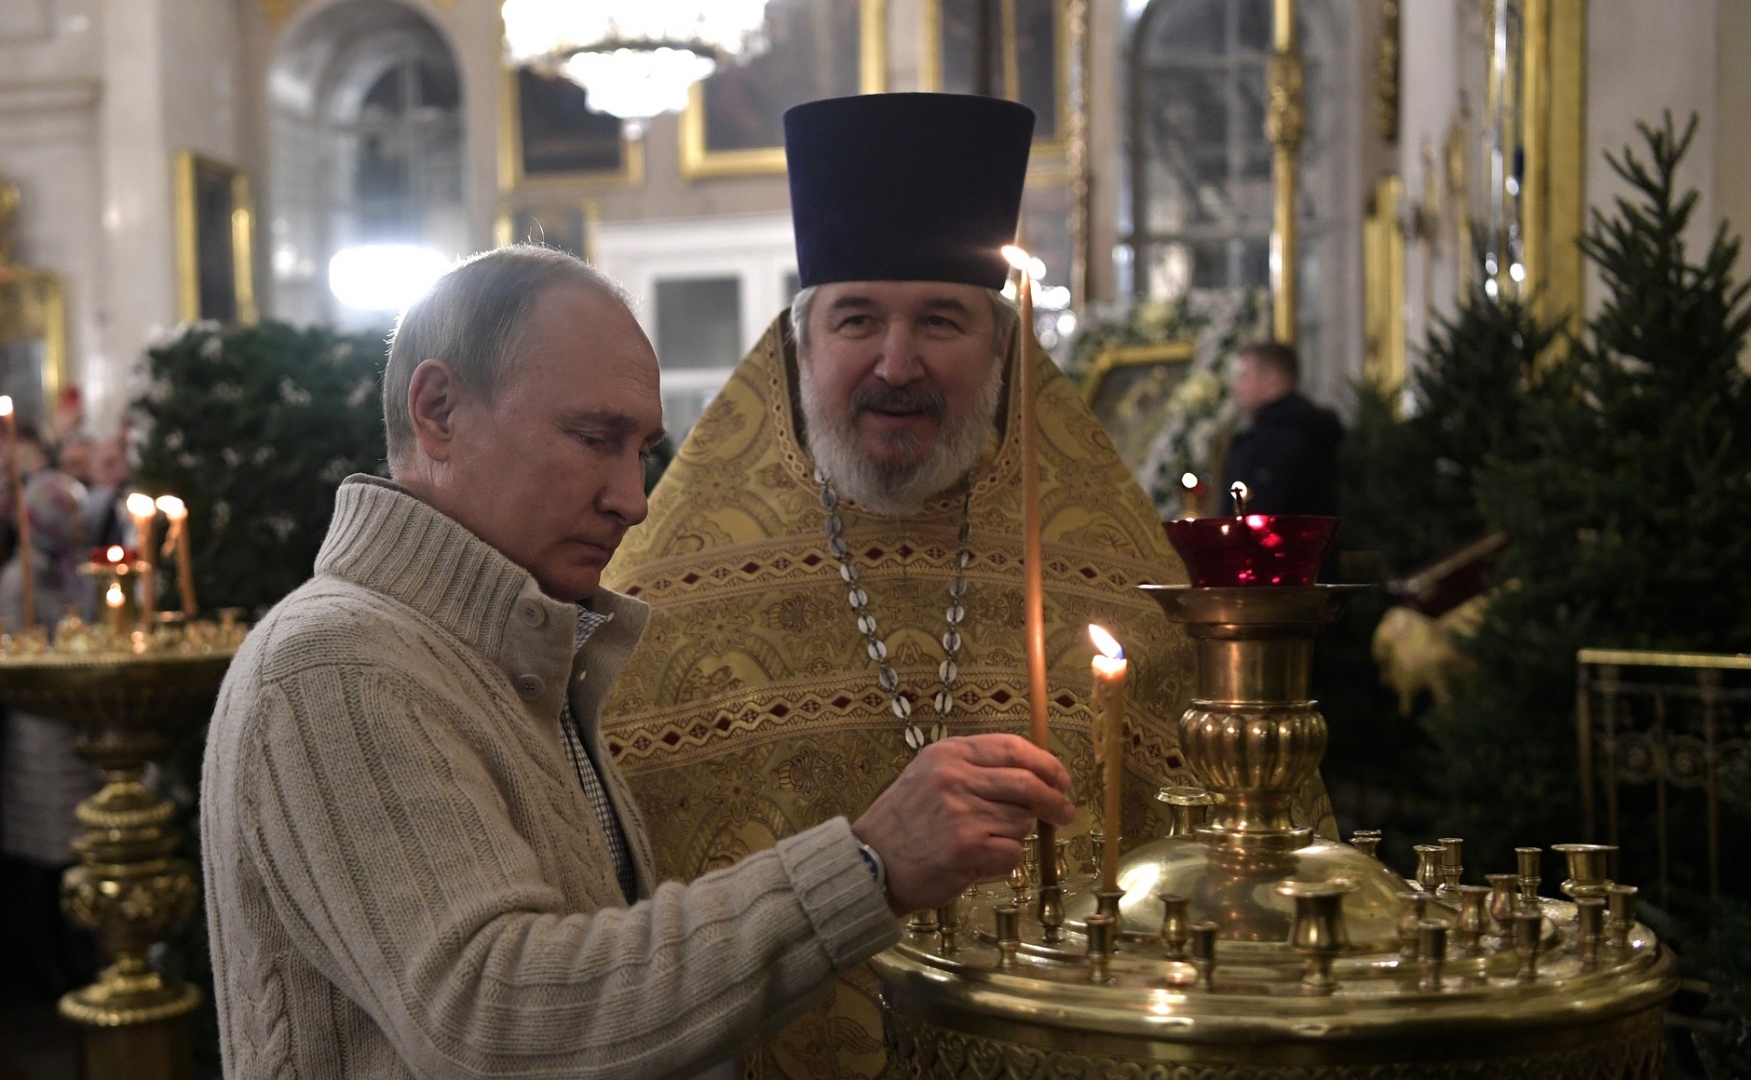 Путин посетит одну из церквей на Рождество, вопреки пандемии